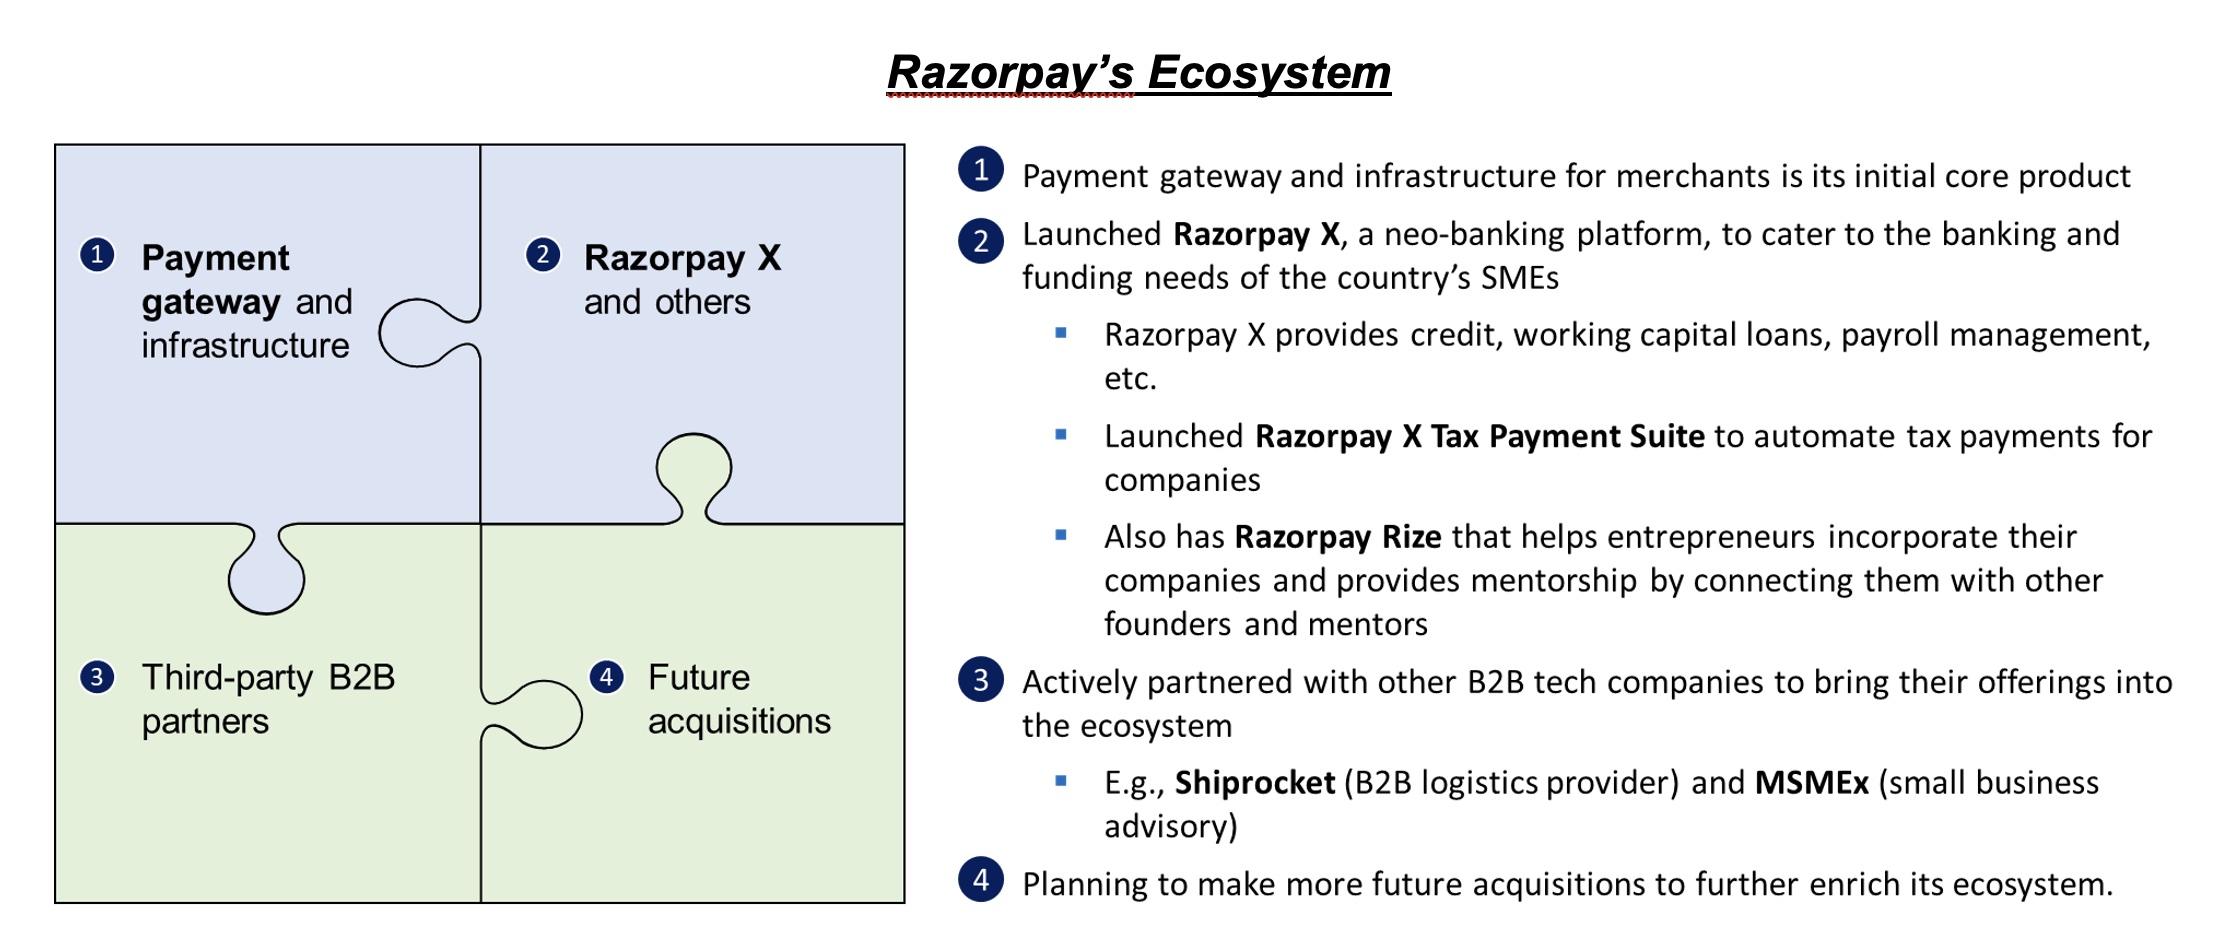 Razorpay’s Ecosystem